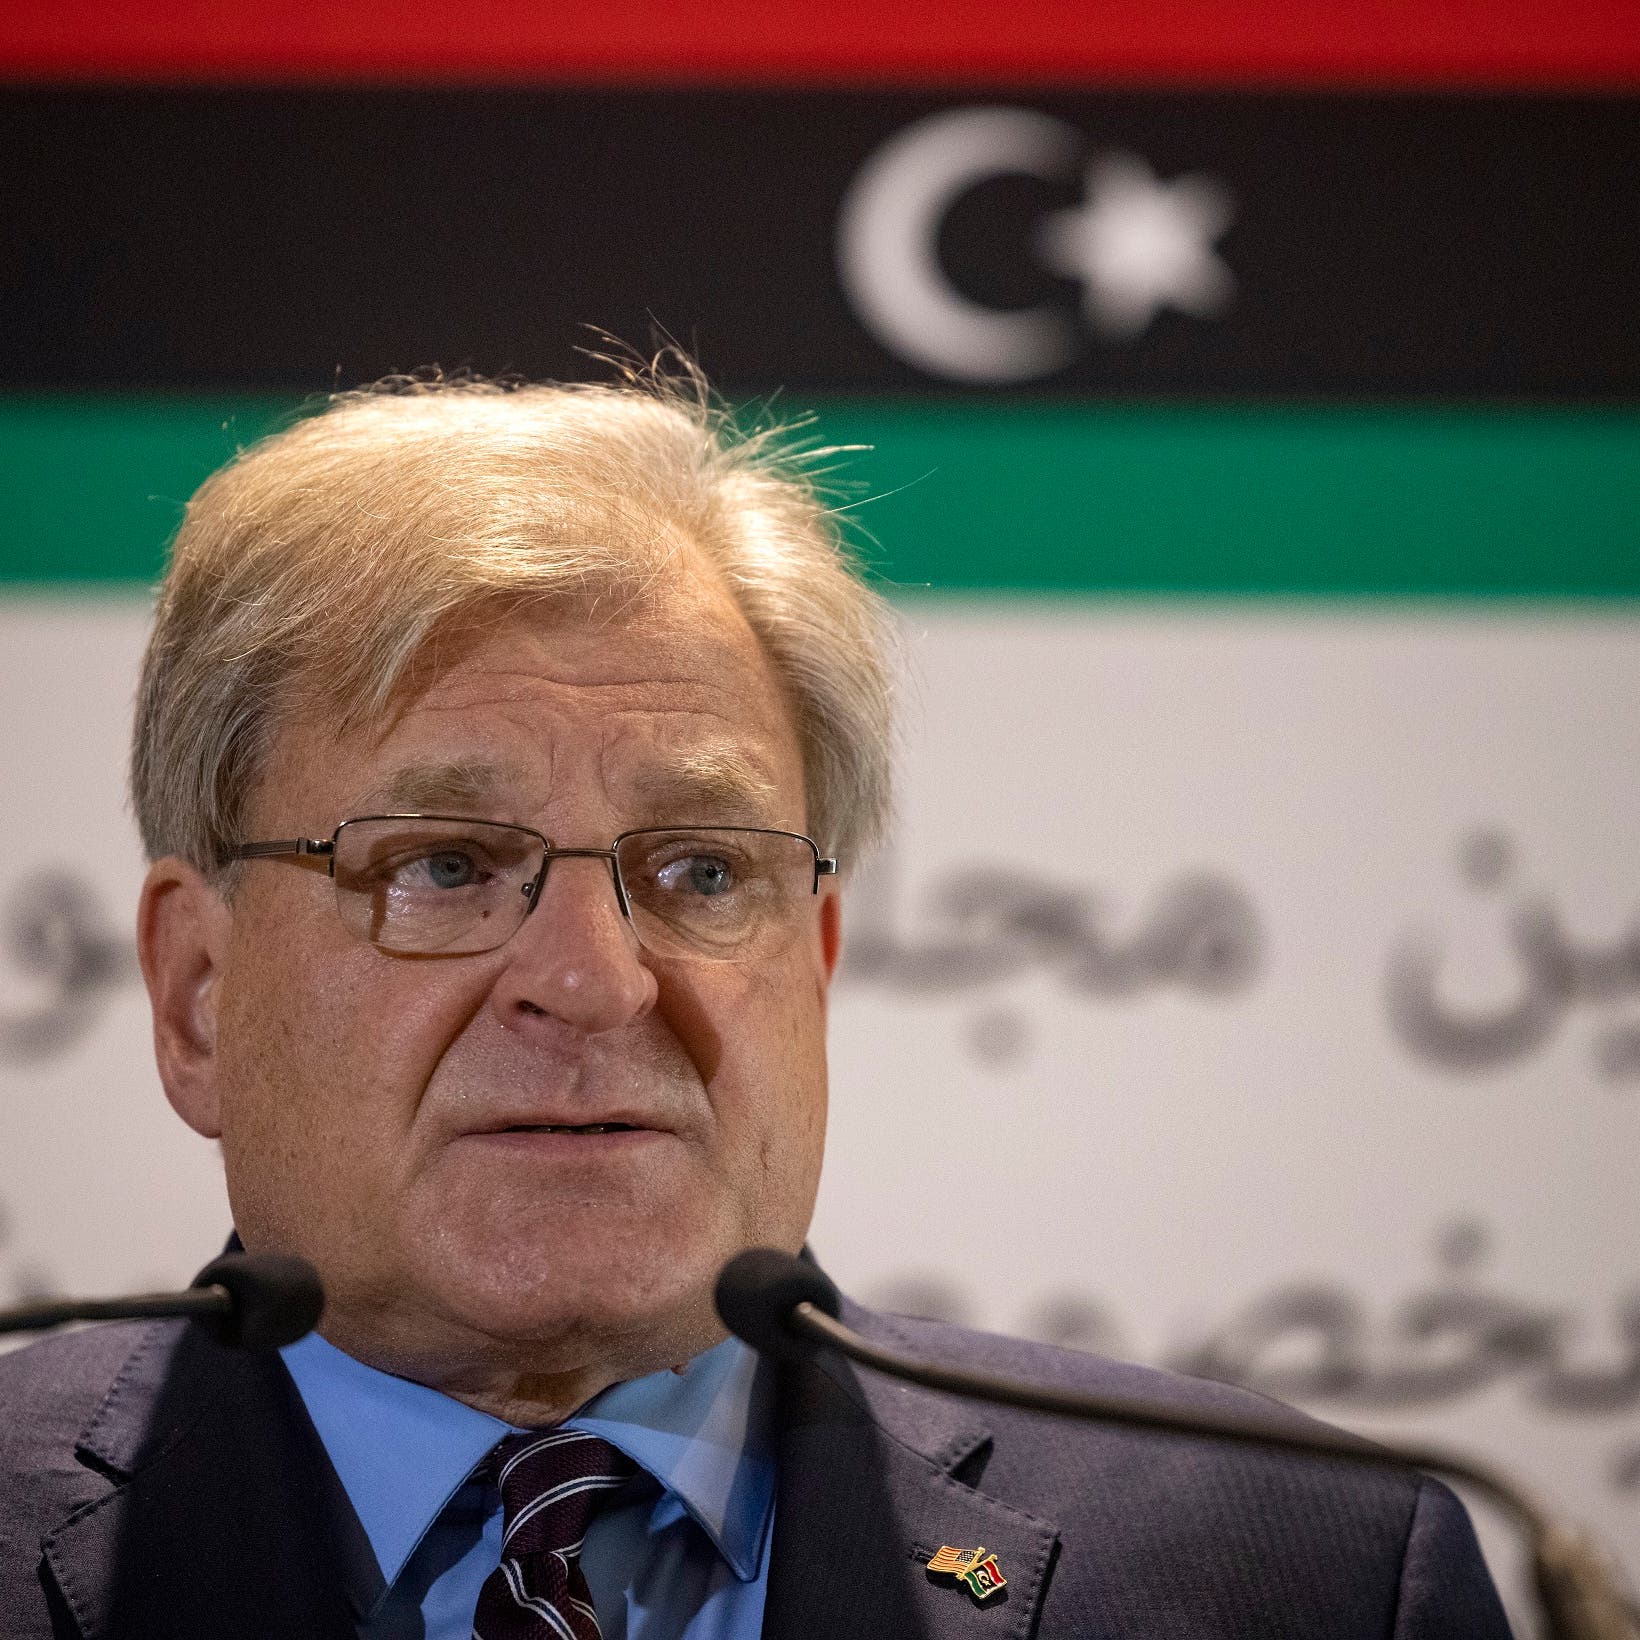 واشنطن تؤيد إجراء الانتخابات في ليبيا دون إقصاء أي مرشح